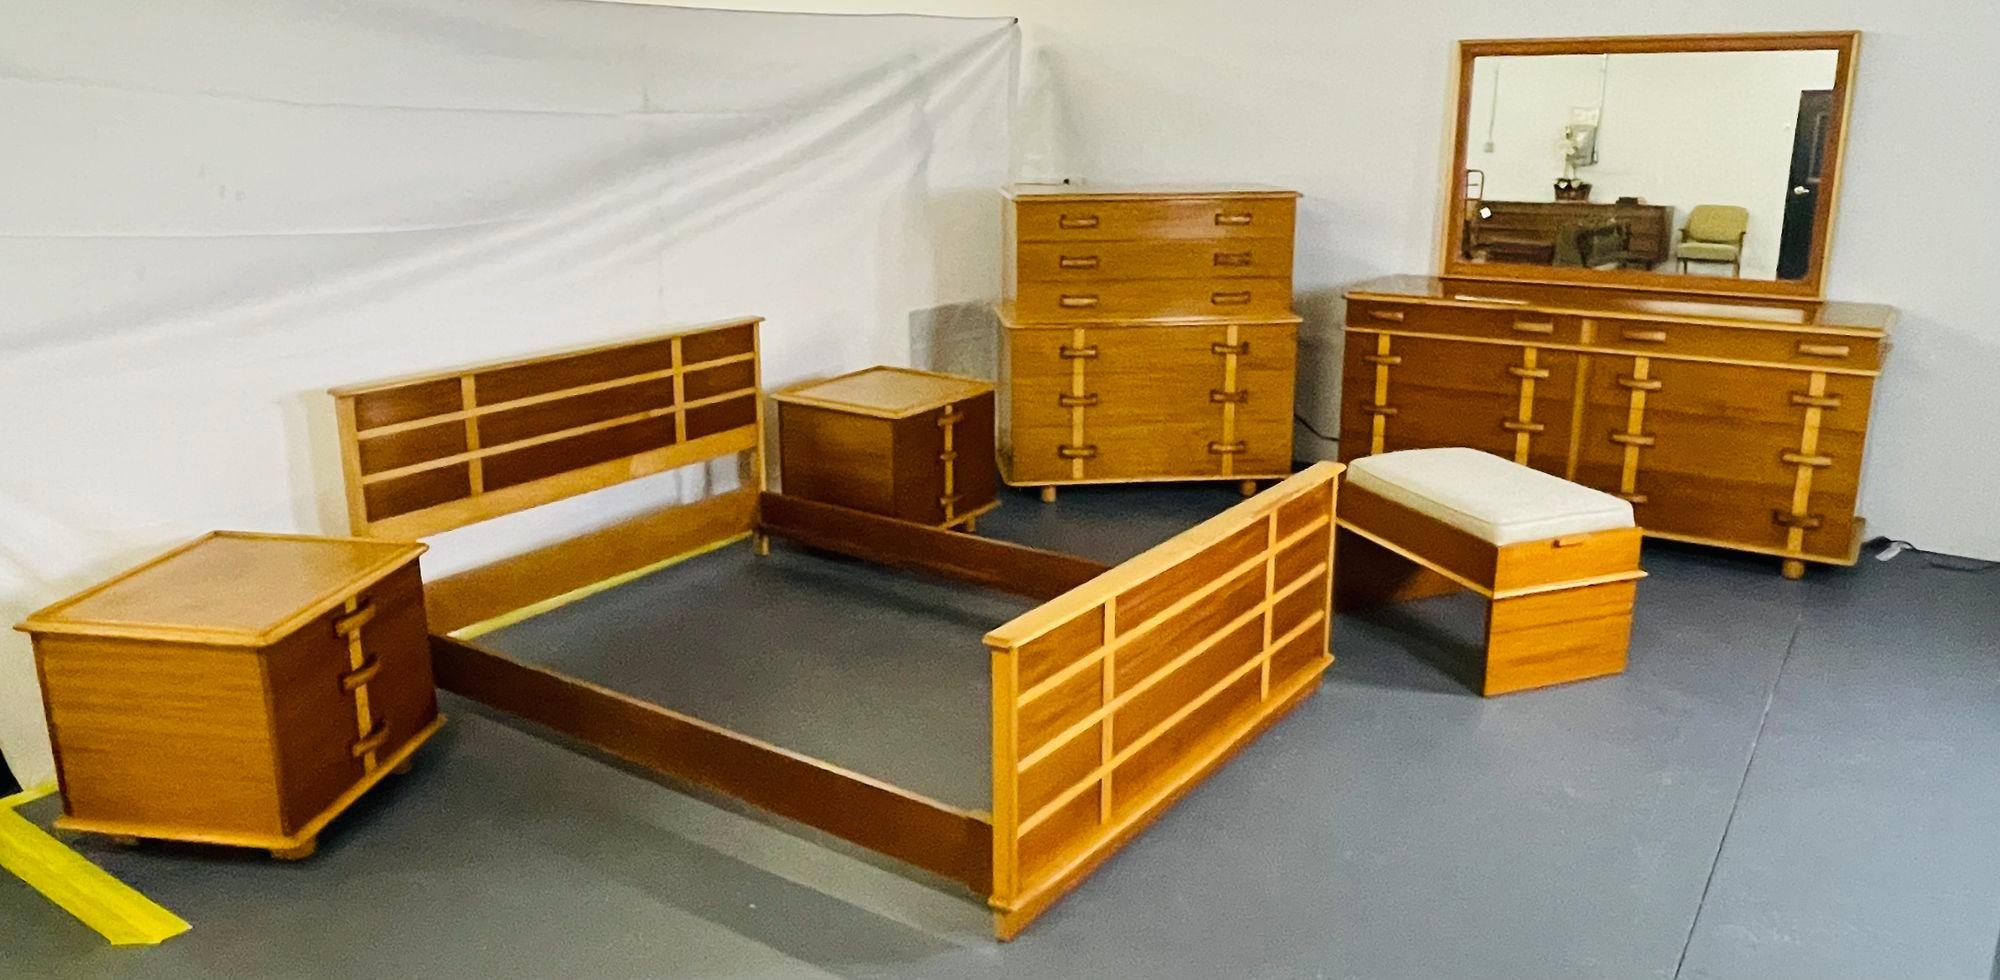 1950 blonde bedroom furniture for sale